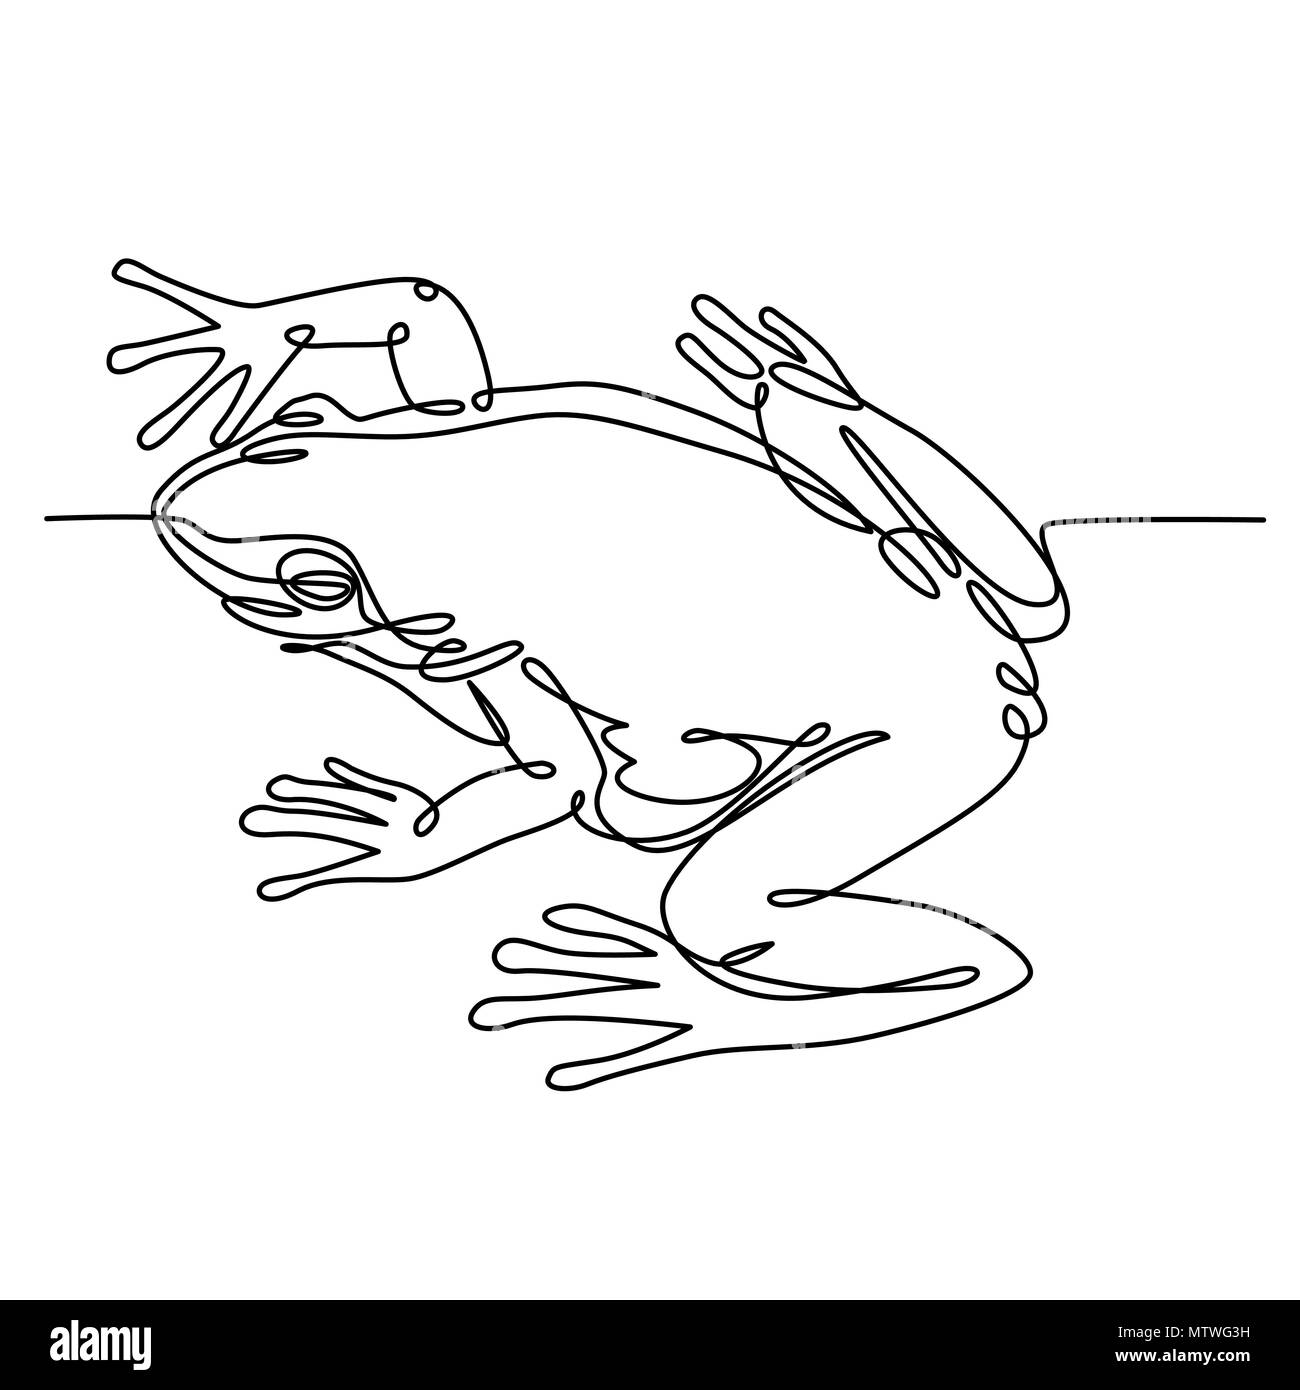 Une grenouille, dessin de ligne une ligne continue le dessin. Vector illustration noir et blanc. Concept de logo, bannière, carte, affiche, flyer Illustration de Vecteur